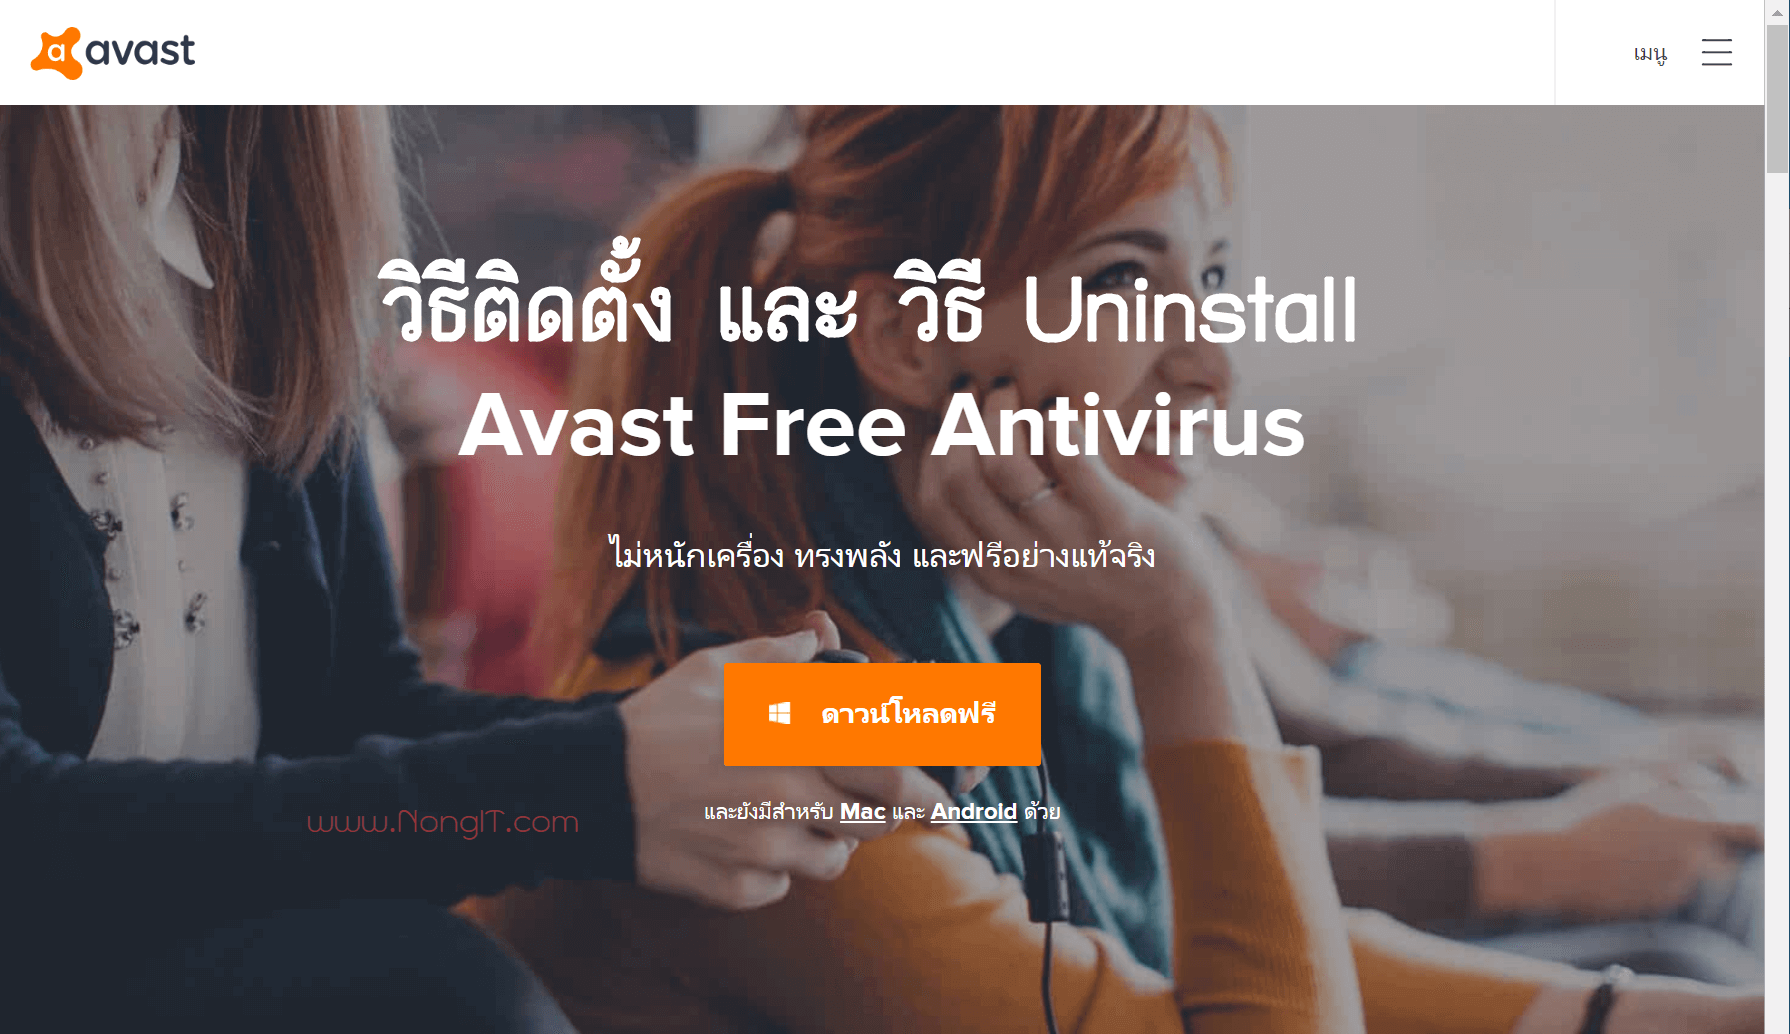 ติดตั้ง Avast Free Antivirus